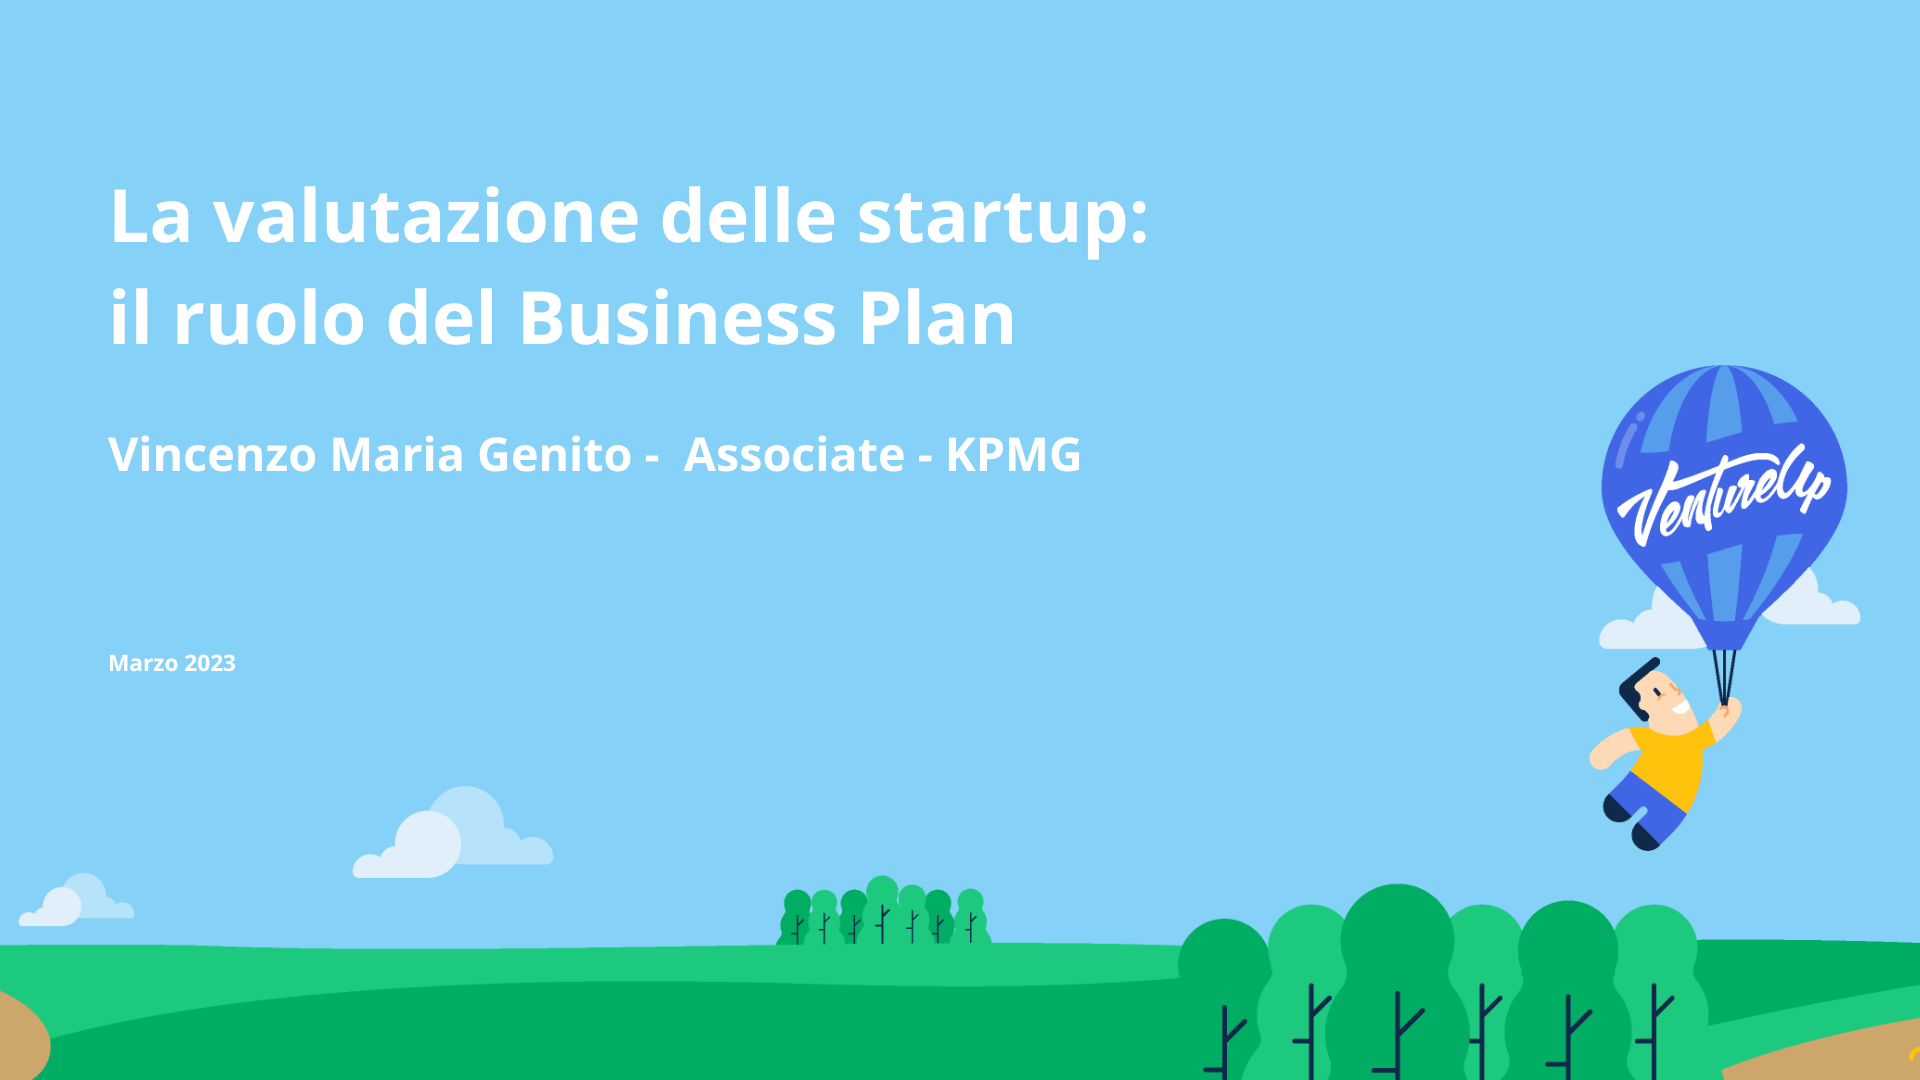 La valutazione delle startup: il ruolo del Business Plan<br>Vincenzo Maria Genito - KPMG